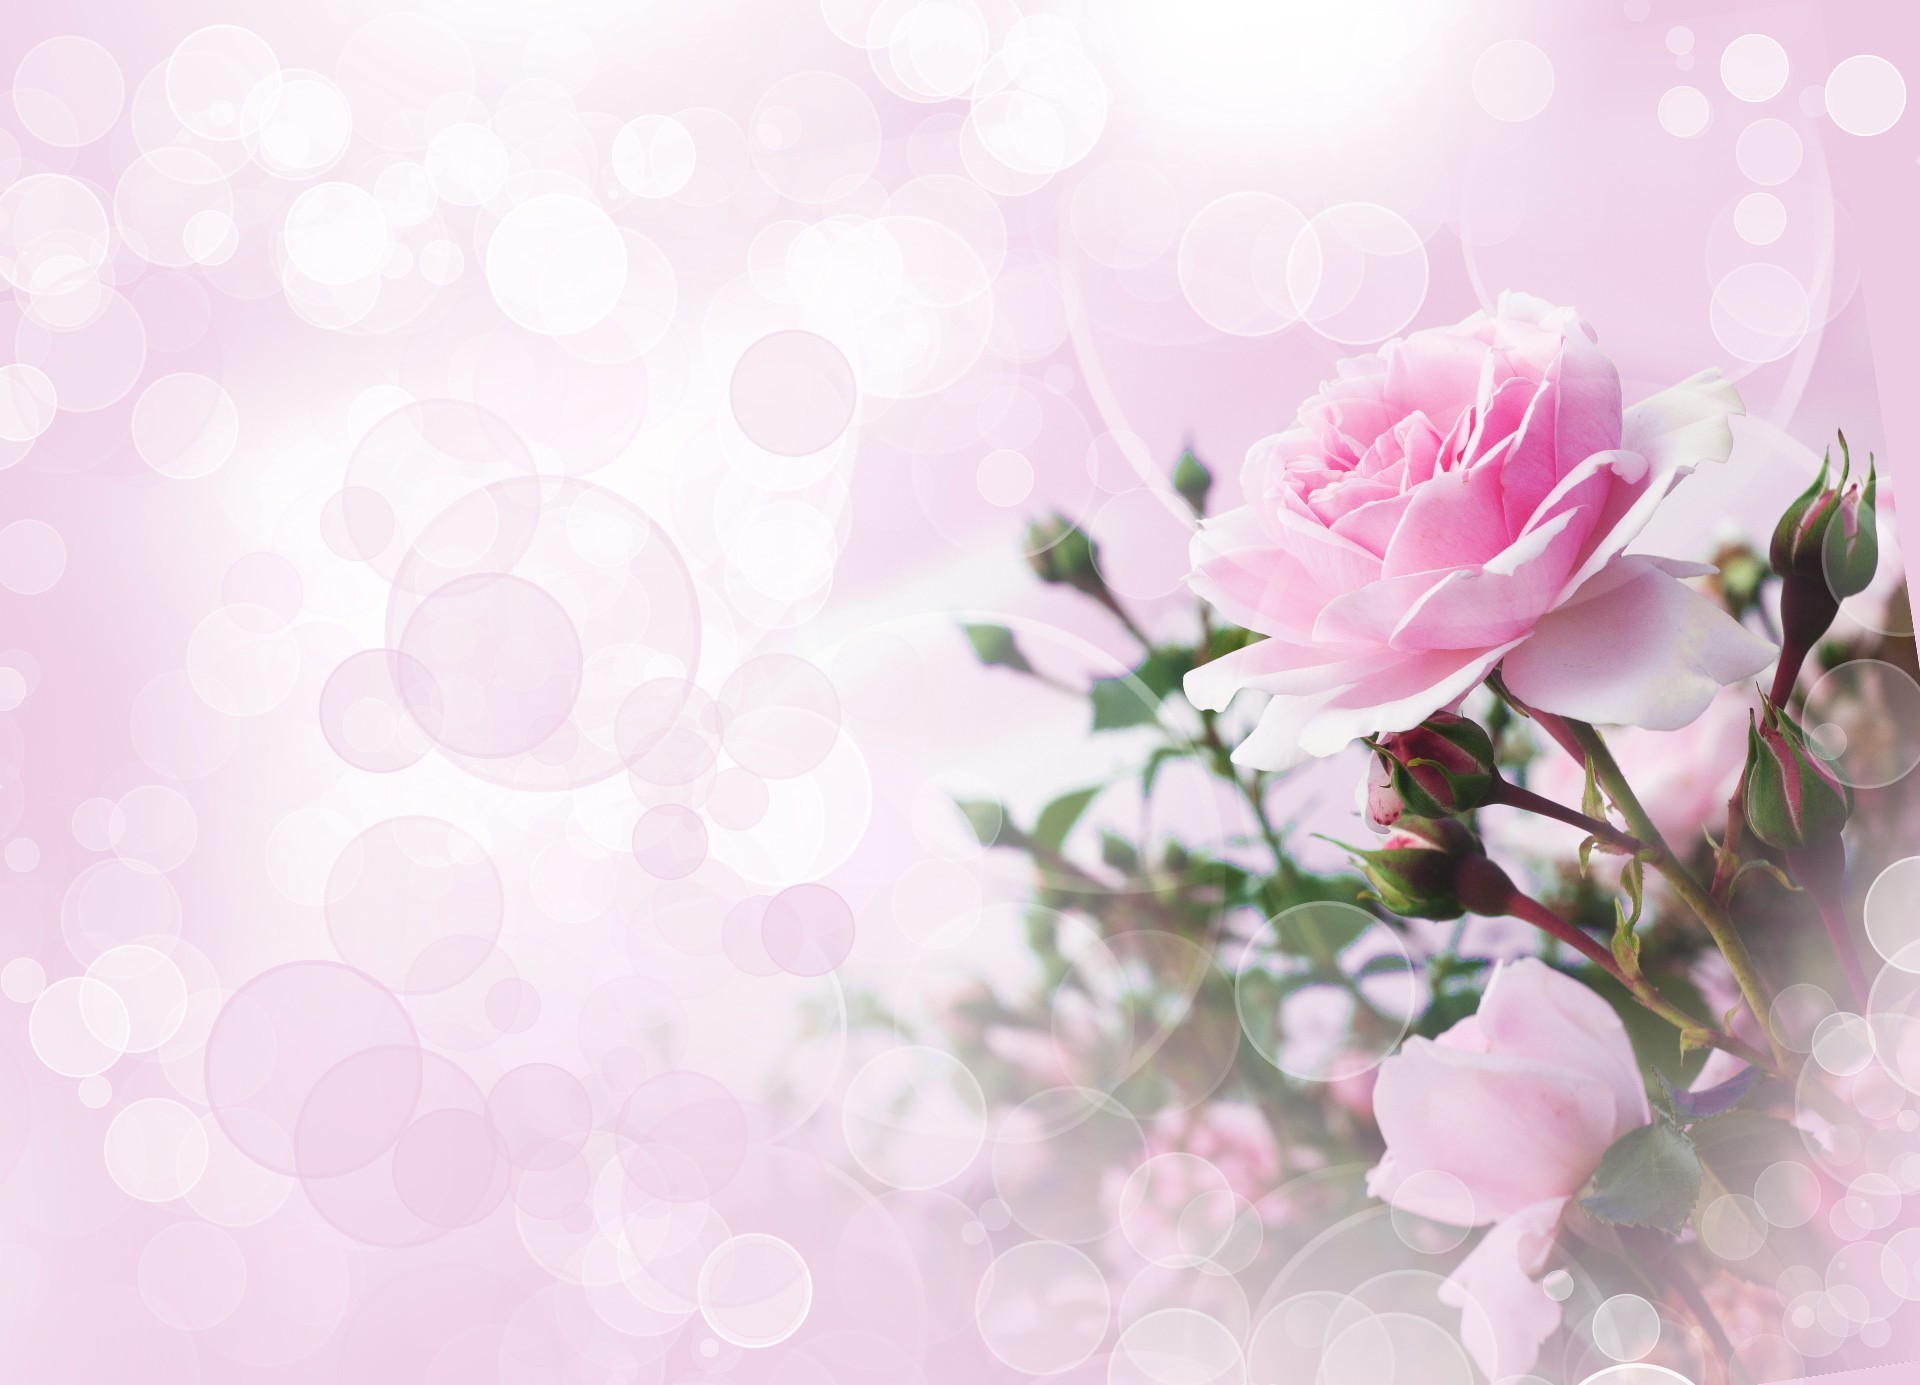 розы цветок флора цветочные цвет карта природа рабочего стола яркий украшения свадьба лист романтический блюминг романтика лето лепесток пастель красивые сад